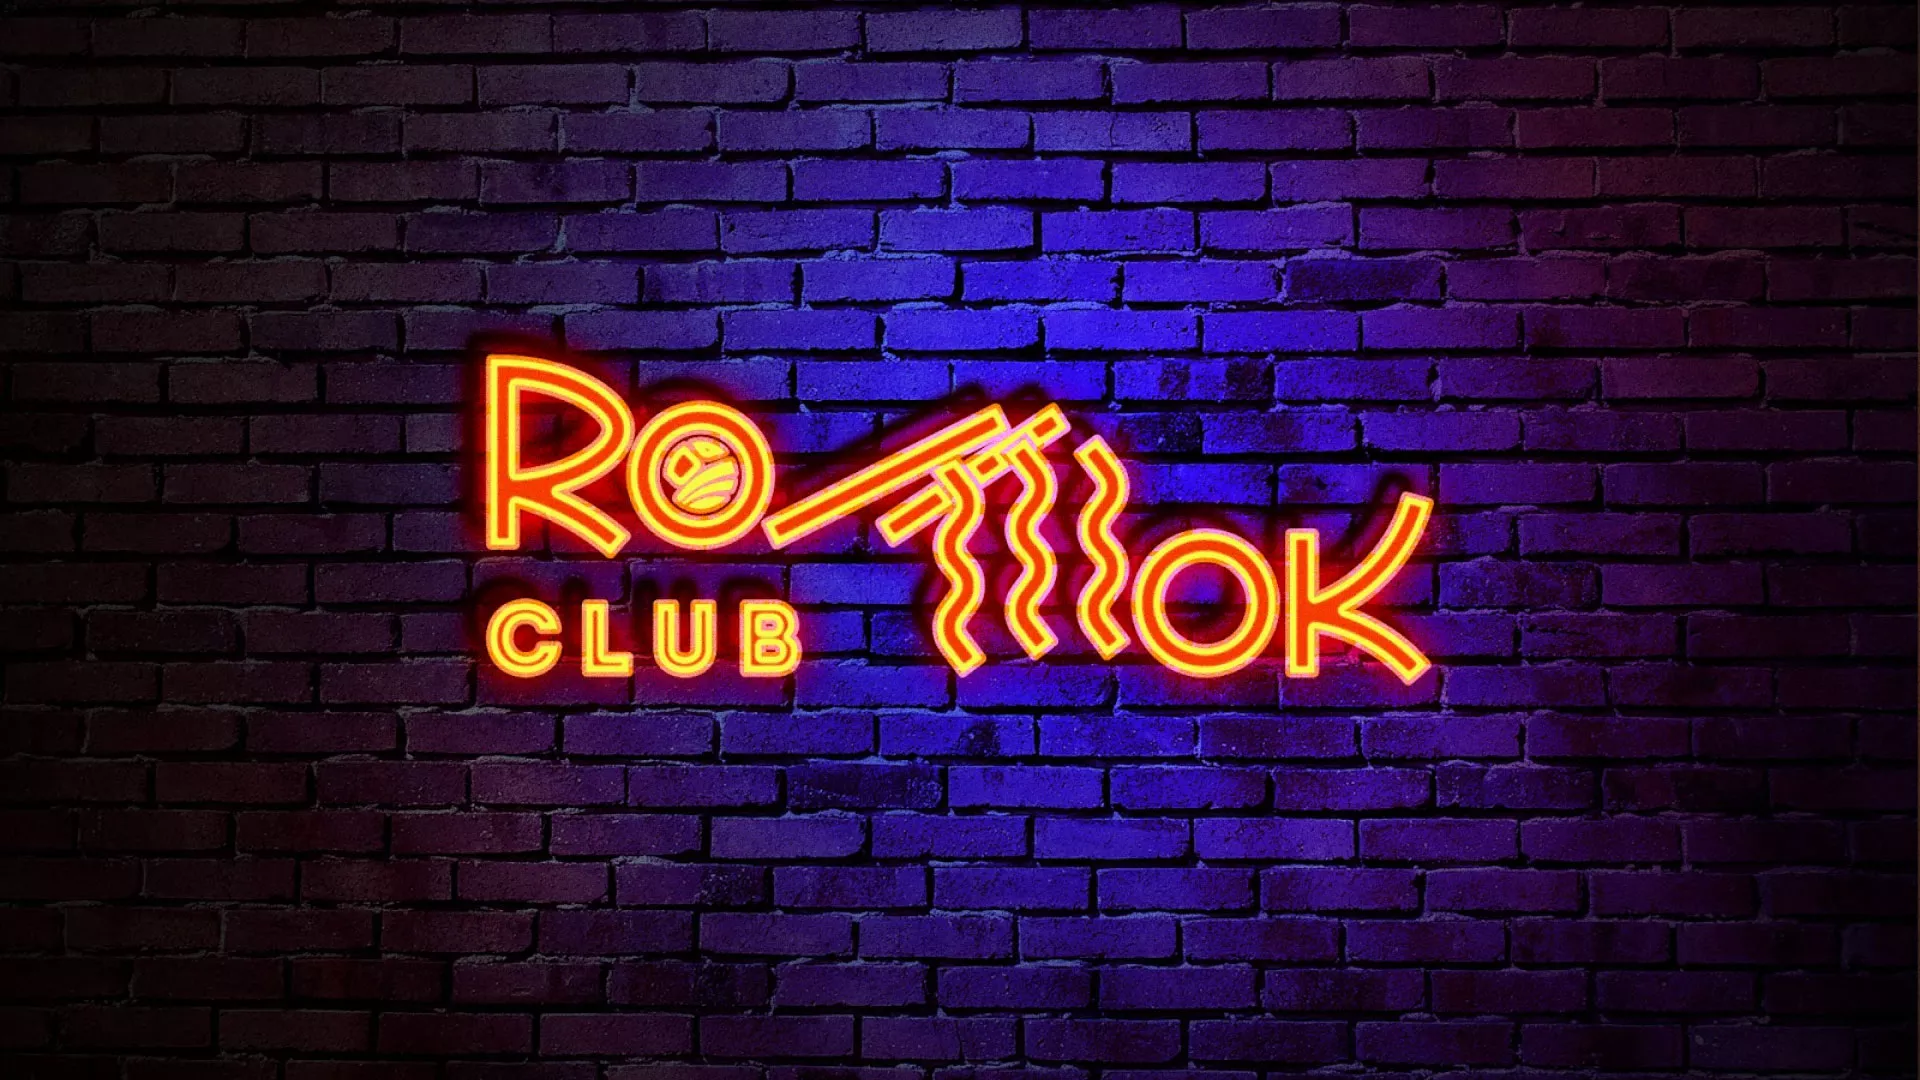 Разработка интерьерной вывески суши-бара «Roll Wok Club» в Орехово-Зуево